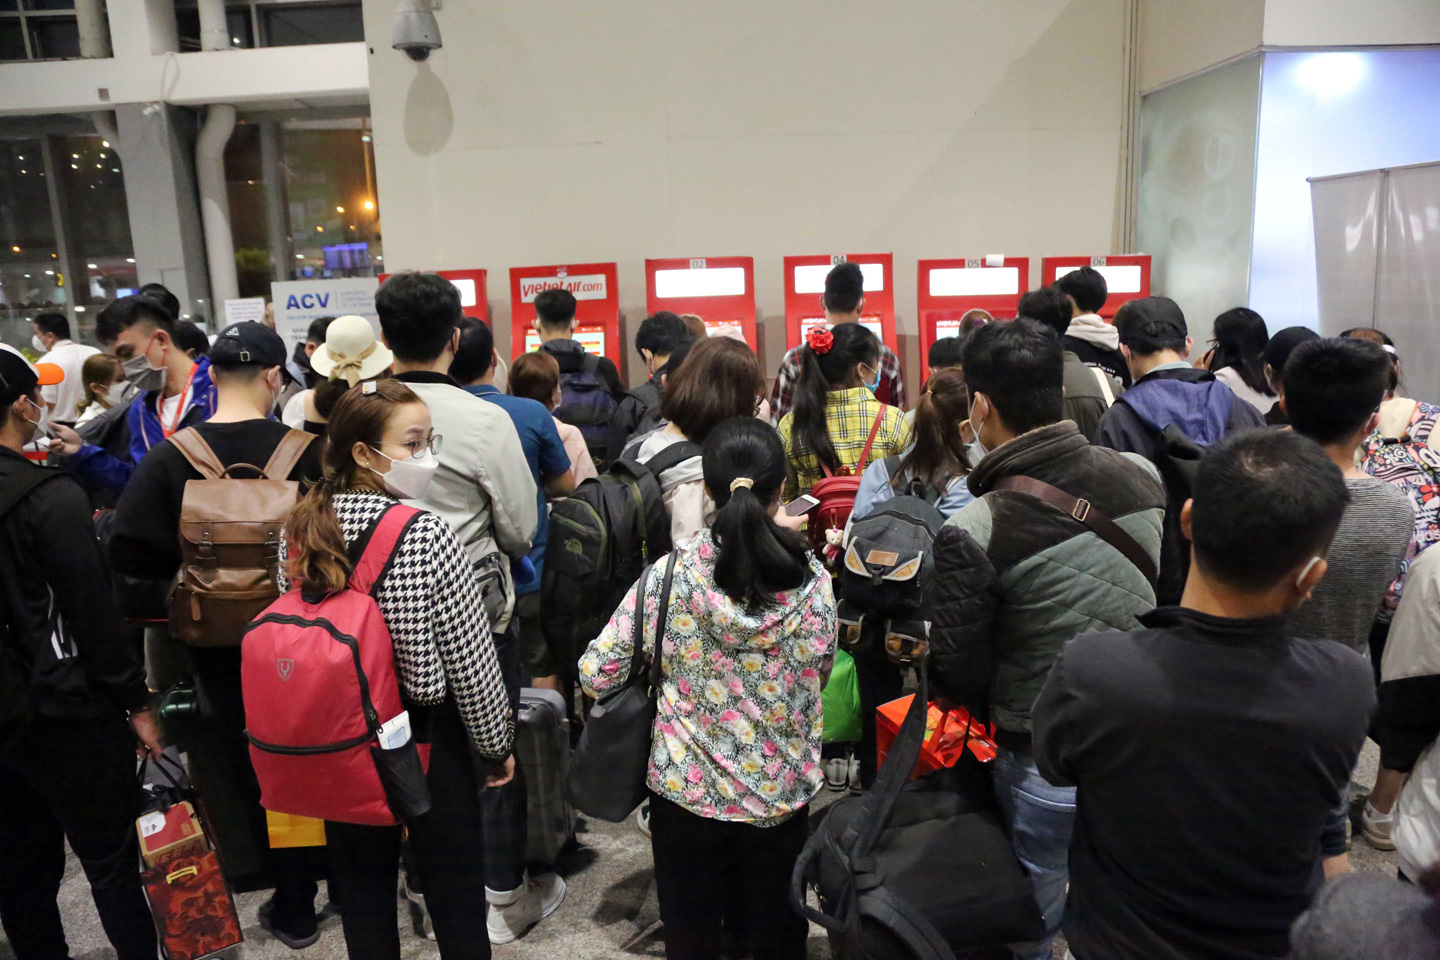 Ảnh: Sân bay Tân Sơn Nhất nghẹt người, khách nằm dài giữa nhà ga cả đêm chờ chuyến bay - 10